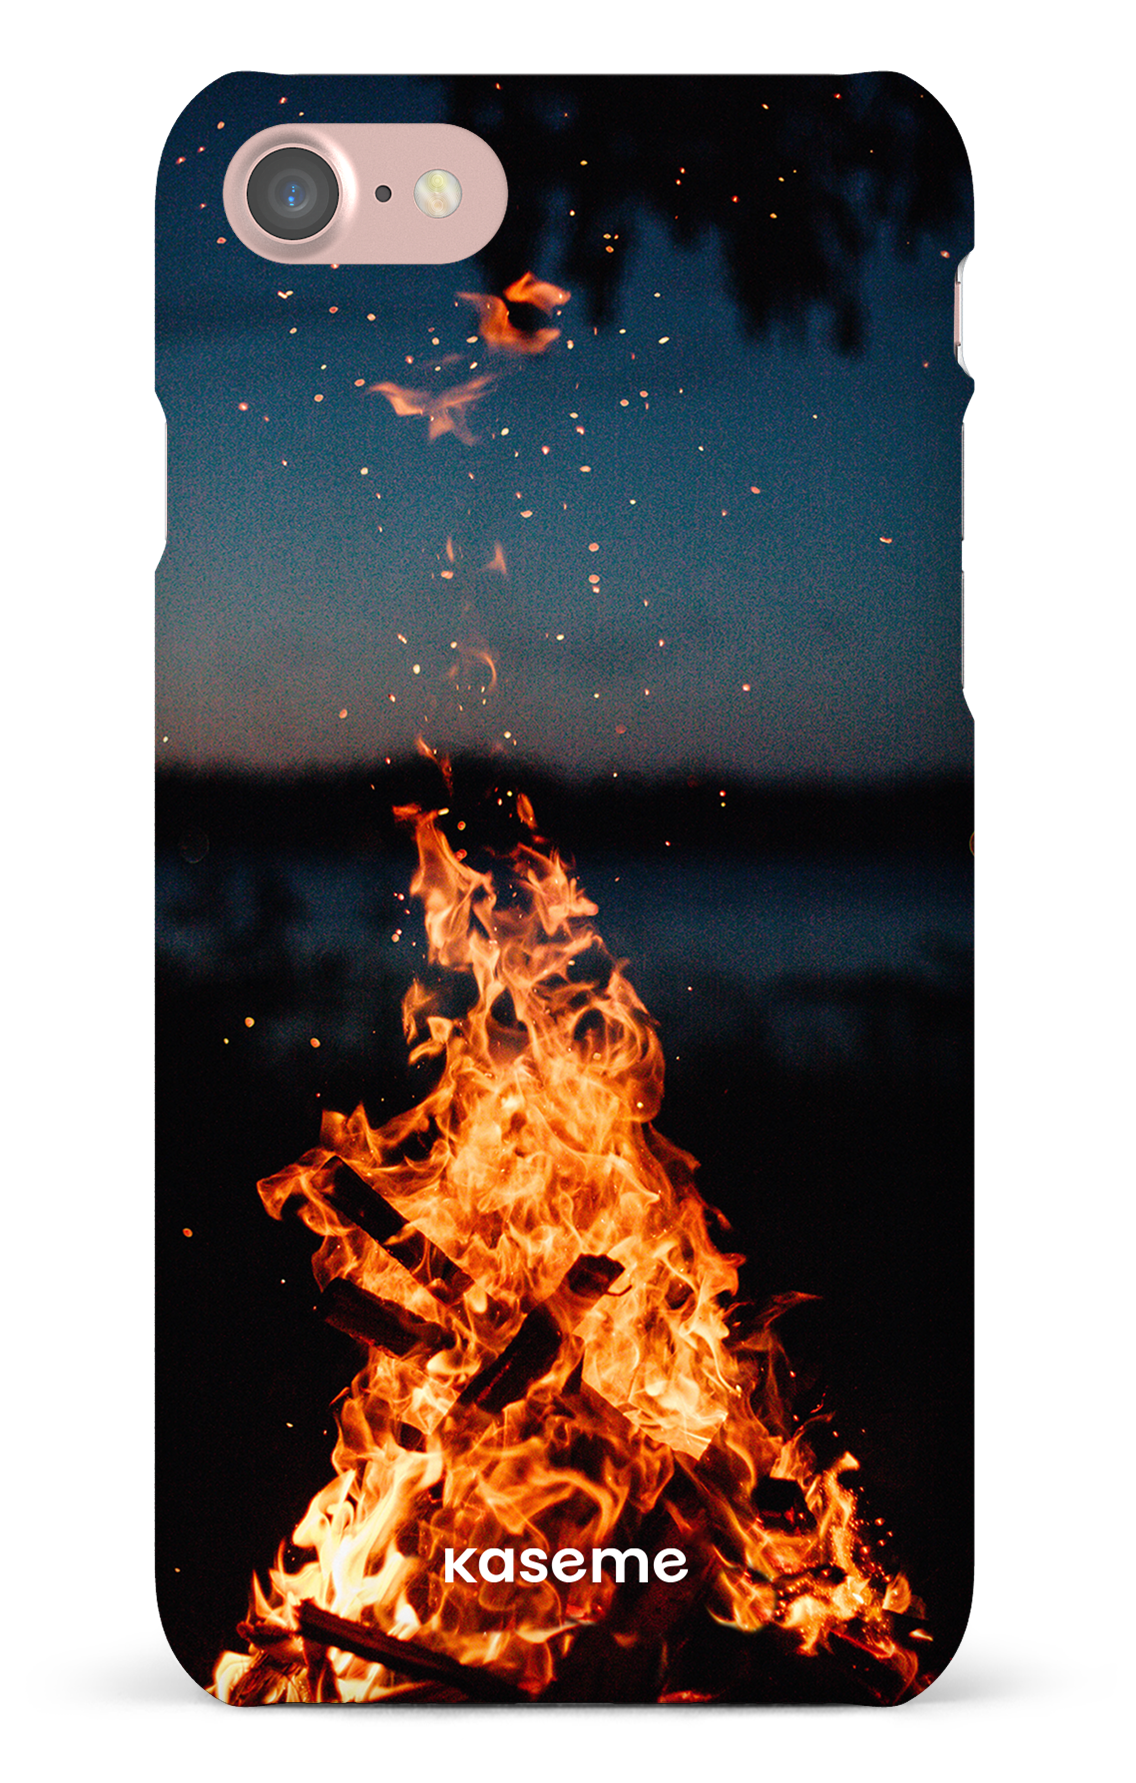 Camp Fire - iPhone 7